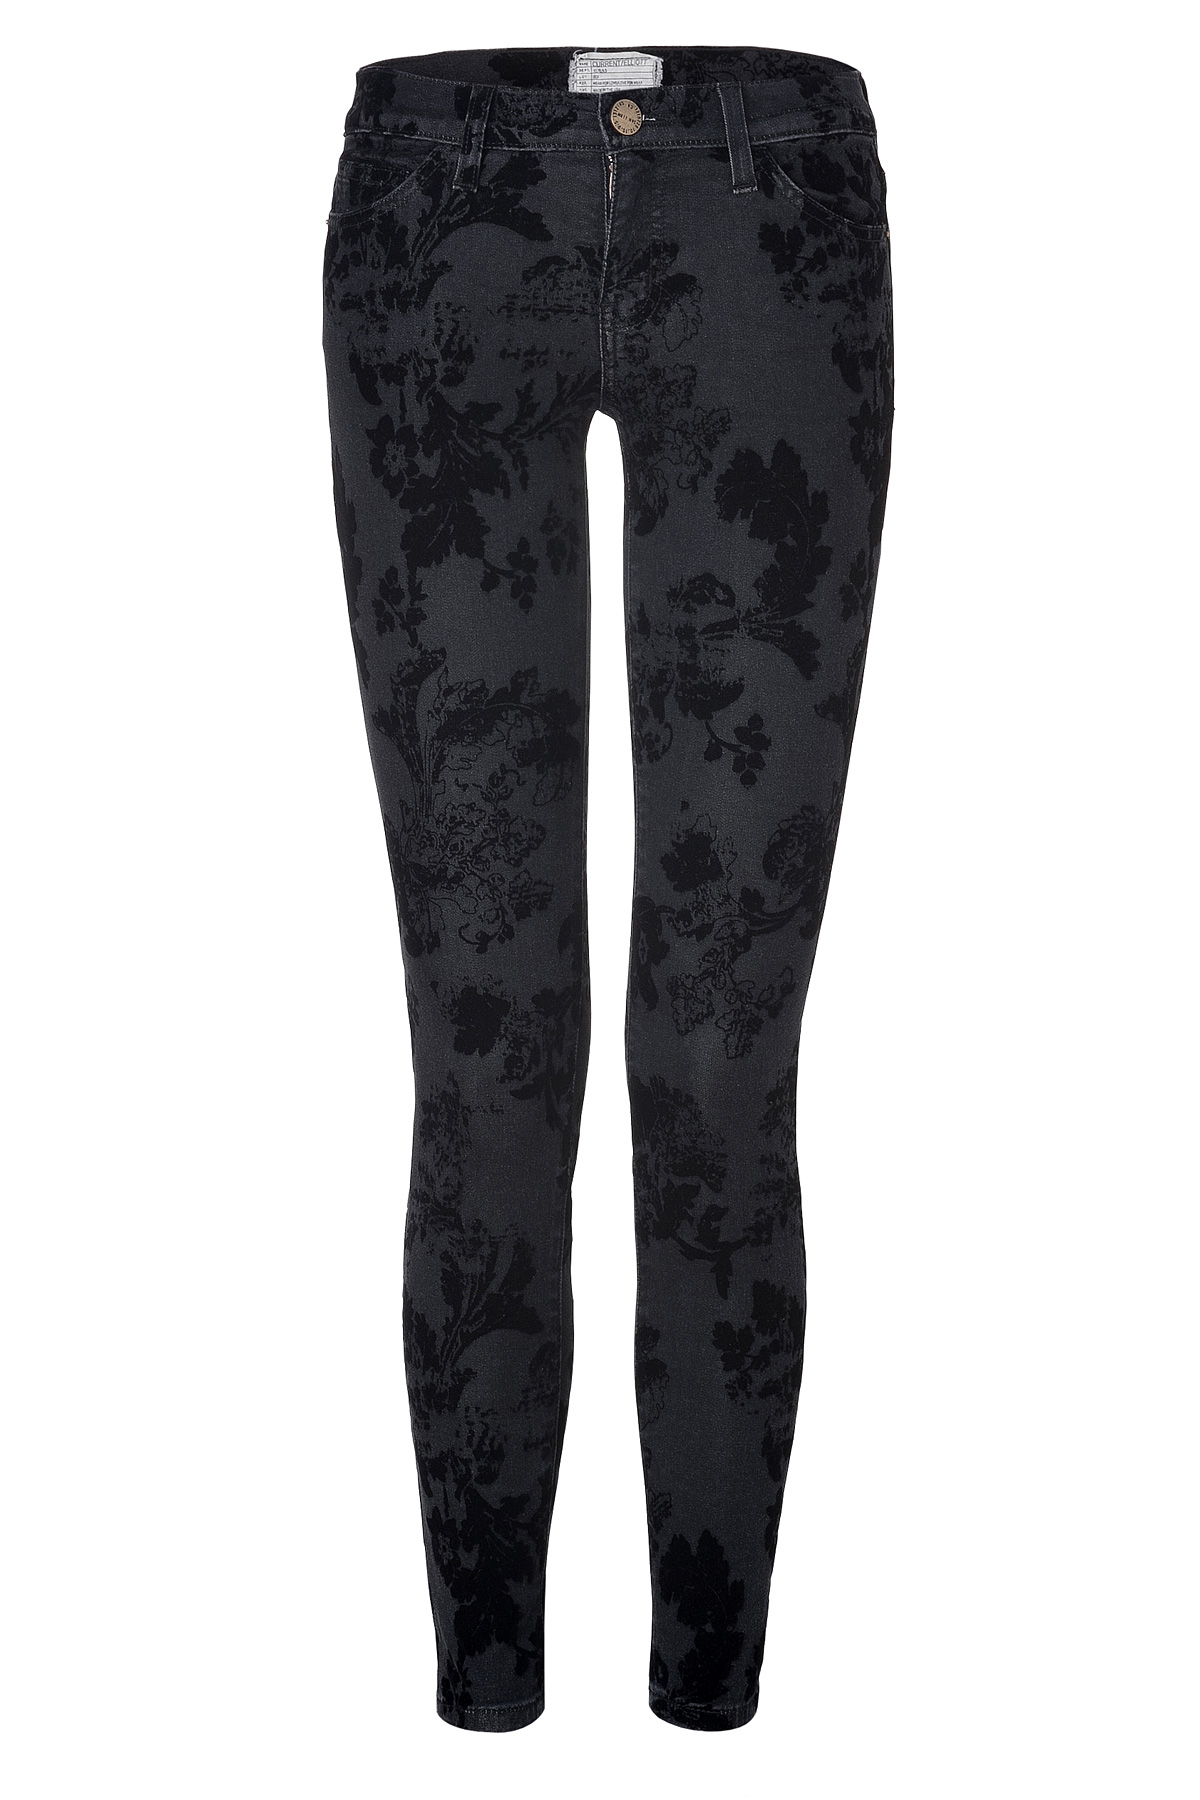 Lyst - Current/elliott Black Velvet Floral Print Ankle Skinny Jeans in Gray